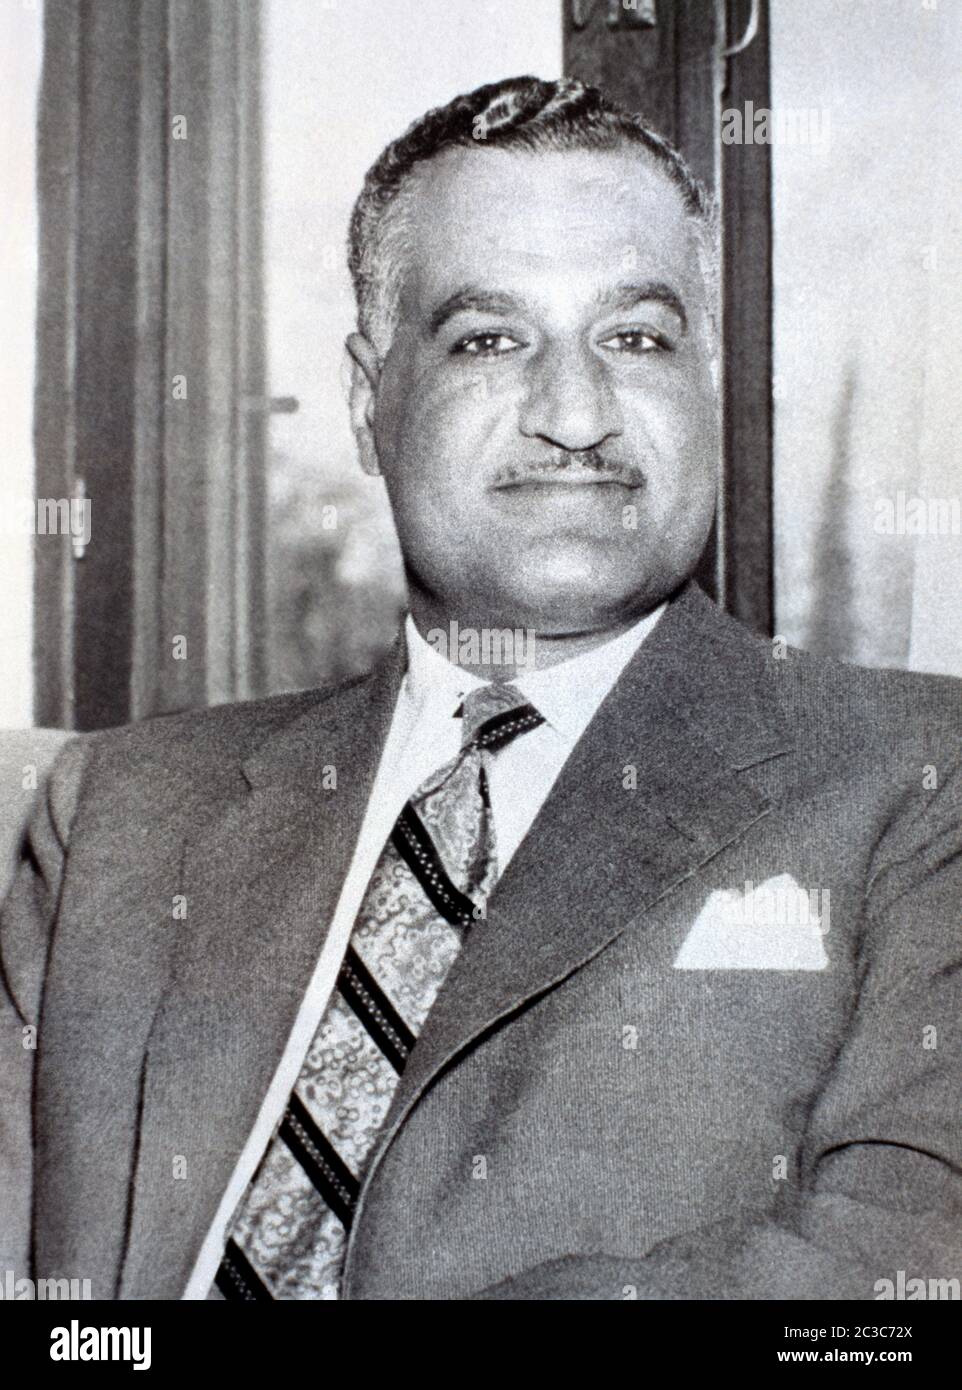 Gamal Abdel Nasser  Second President of Egypt between 1954 - 1970 Stock Photo